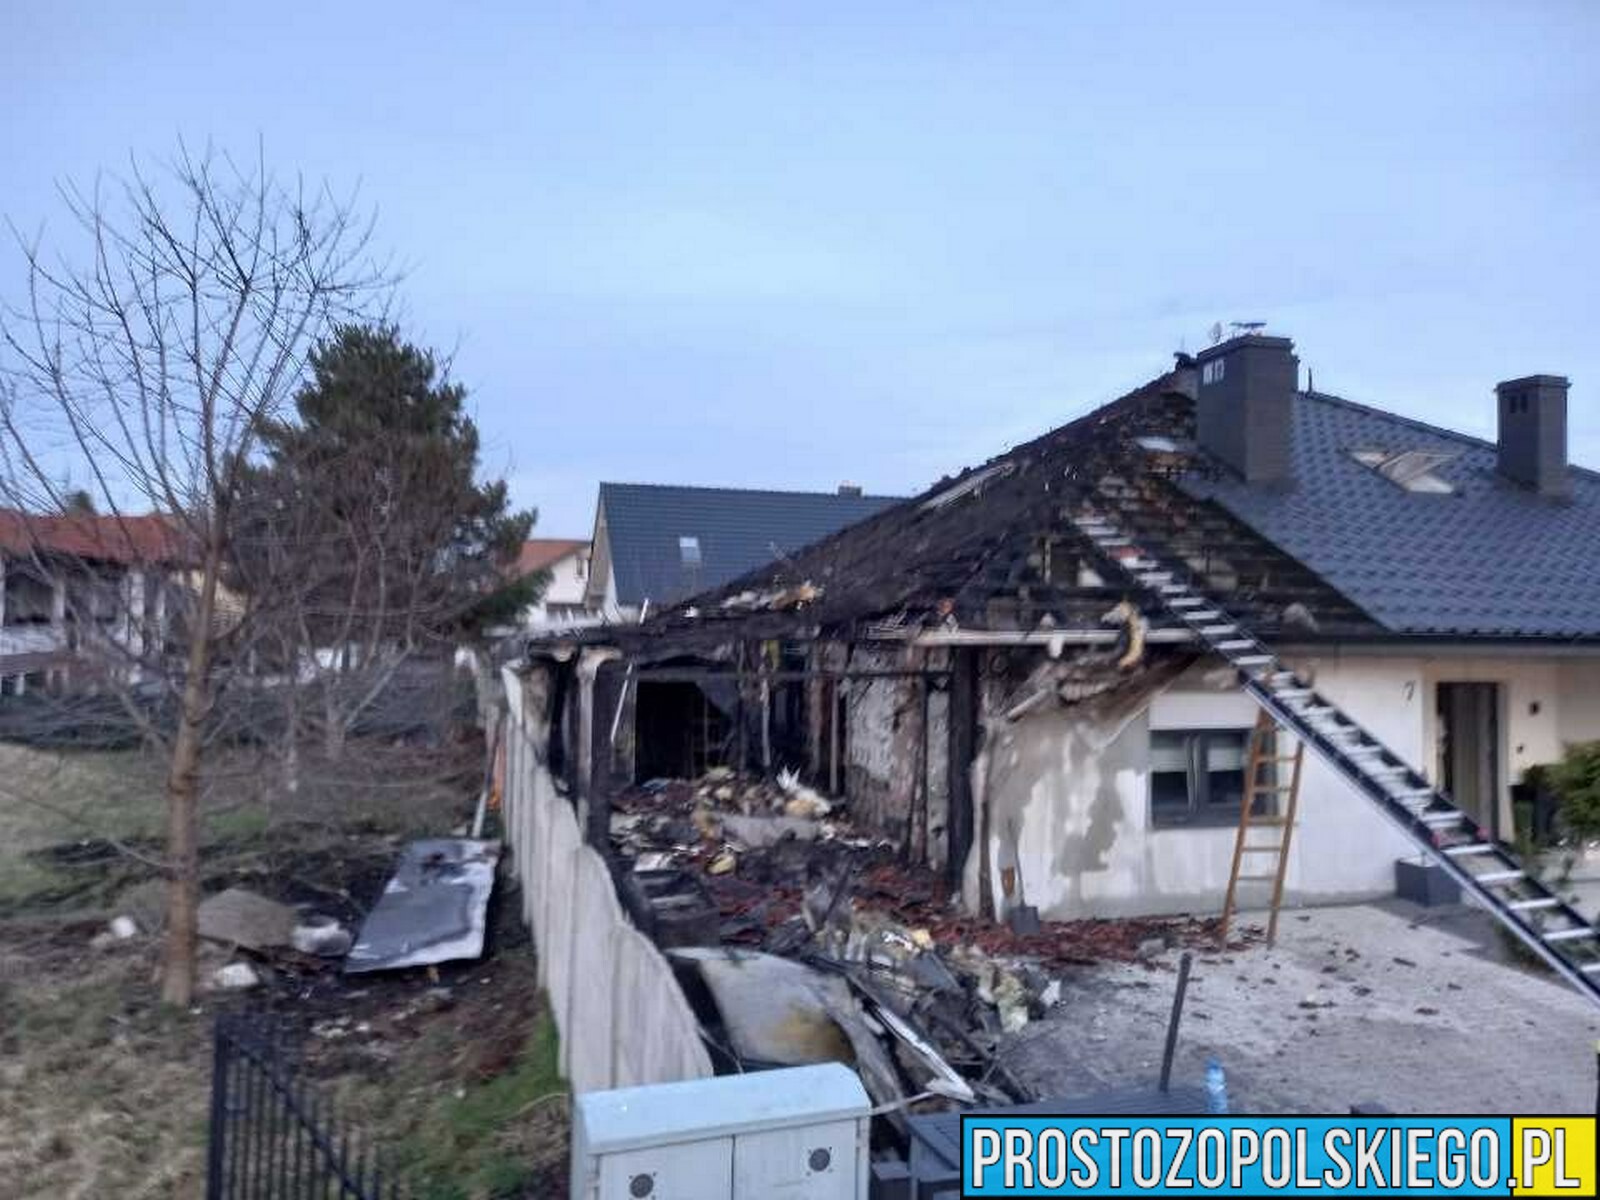 Pożar poddasza w domu jednorodzinnym w Grodkowie. Jedna osoba został poparzona, zabrana do szpitala.